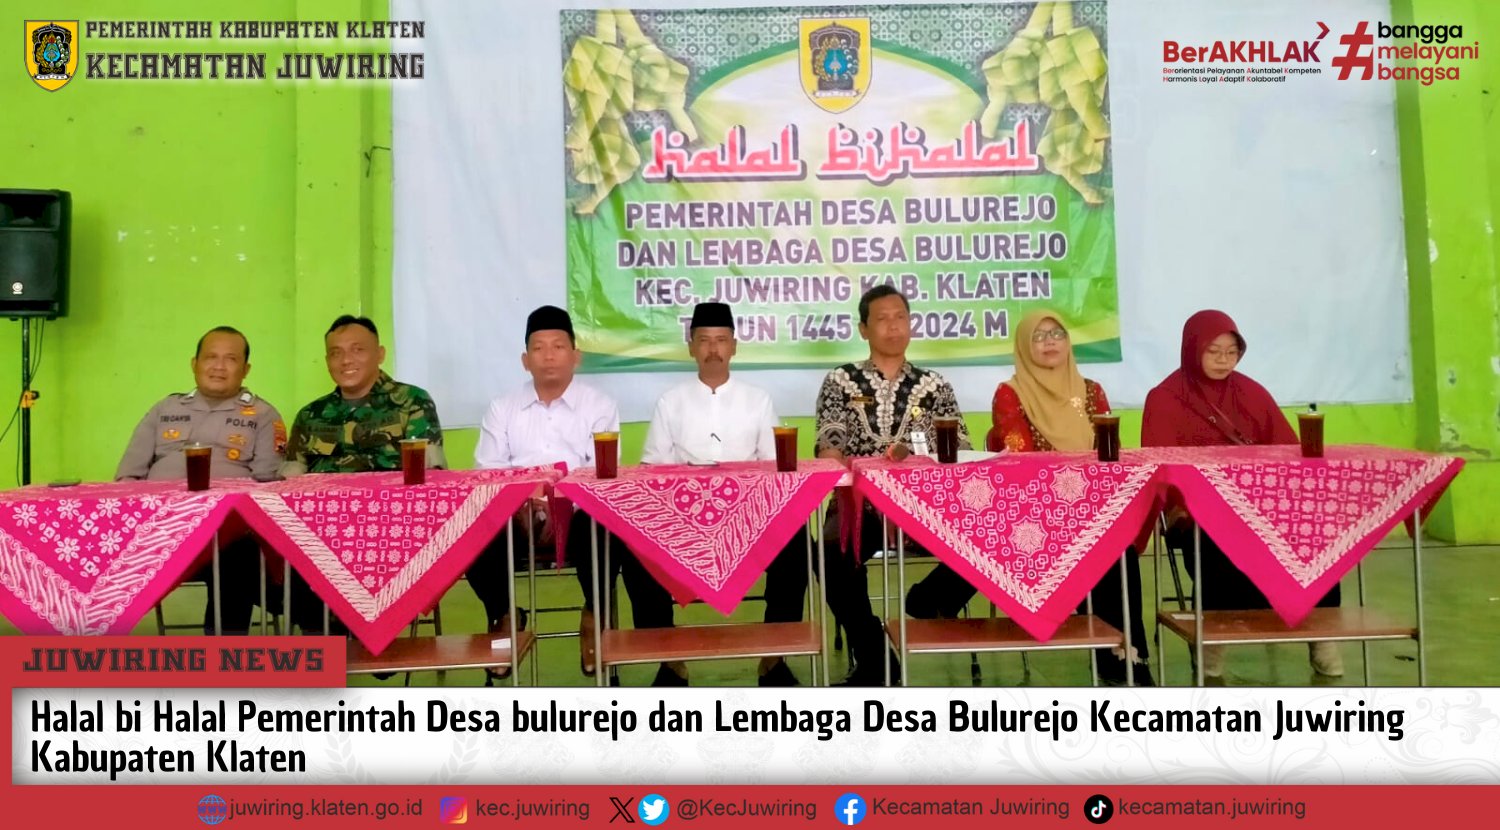 Halal bi Halal Pemerintah Desa Bulurejo Dan Lembaga Desa Bulurejo Kecamatan Juwiring Kabupaten Klaten